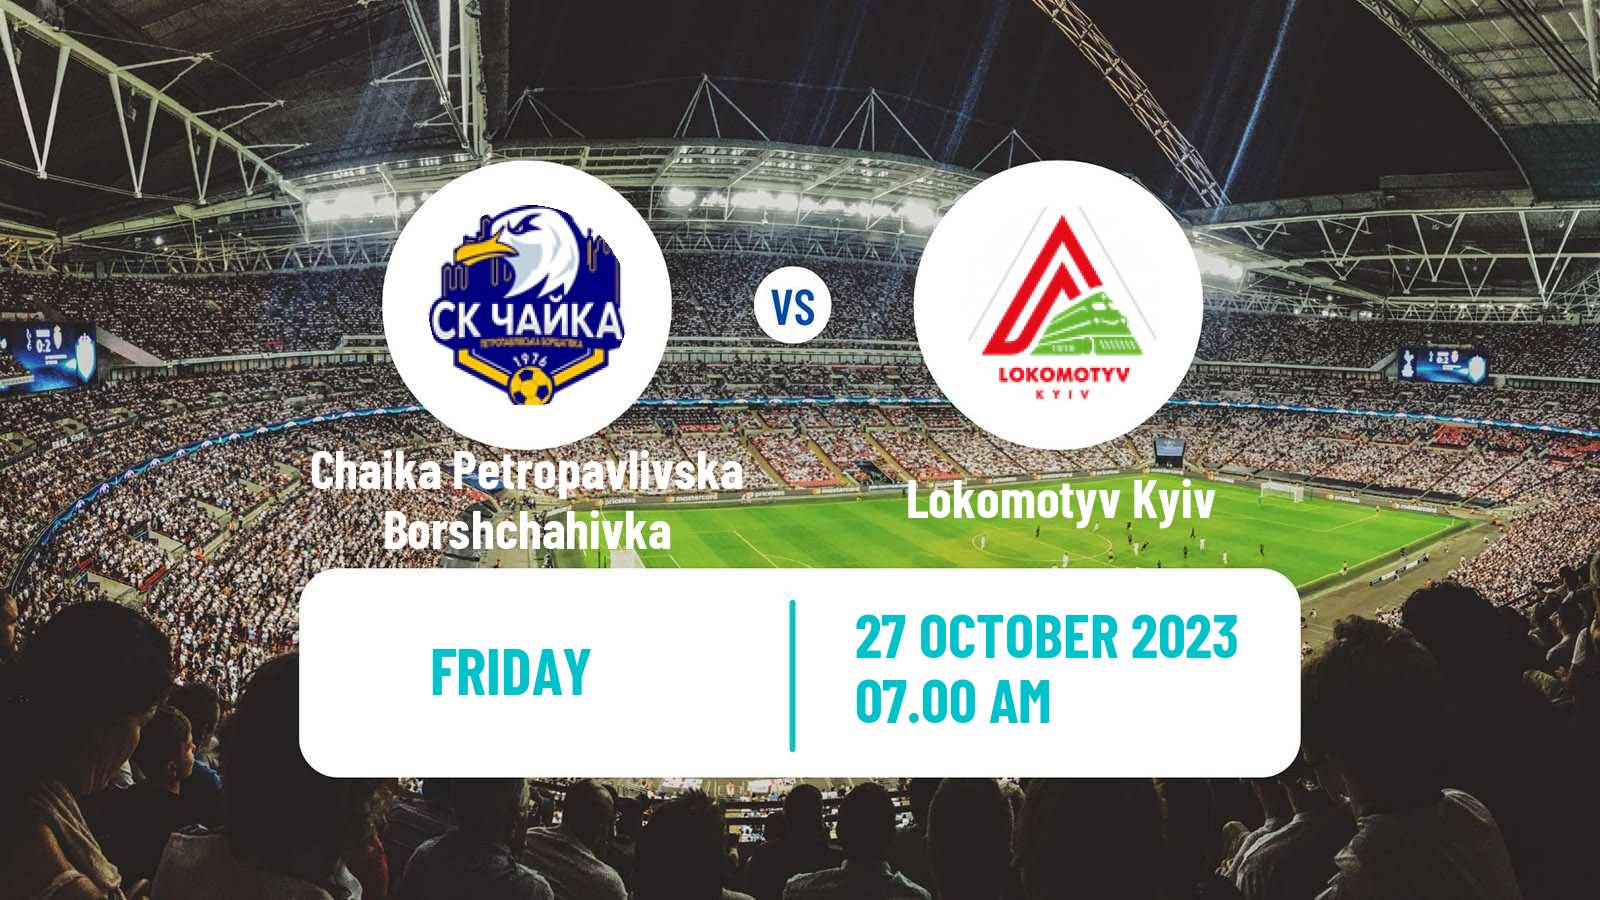 Soccer Ukrainian Druha Liga Chaika Petropavlivska Borshchahivka - Lokomotyv Kyiv